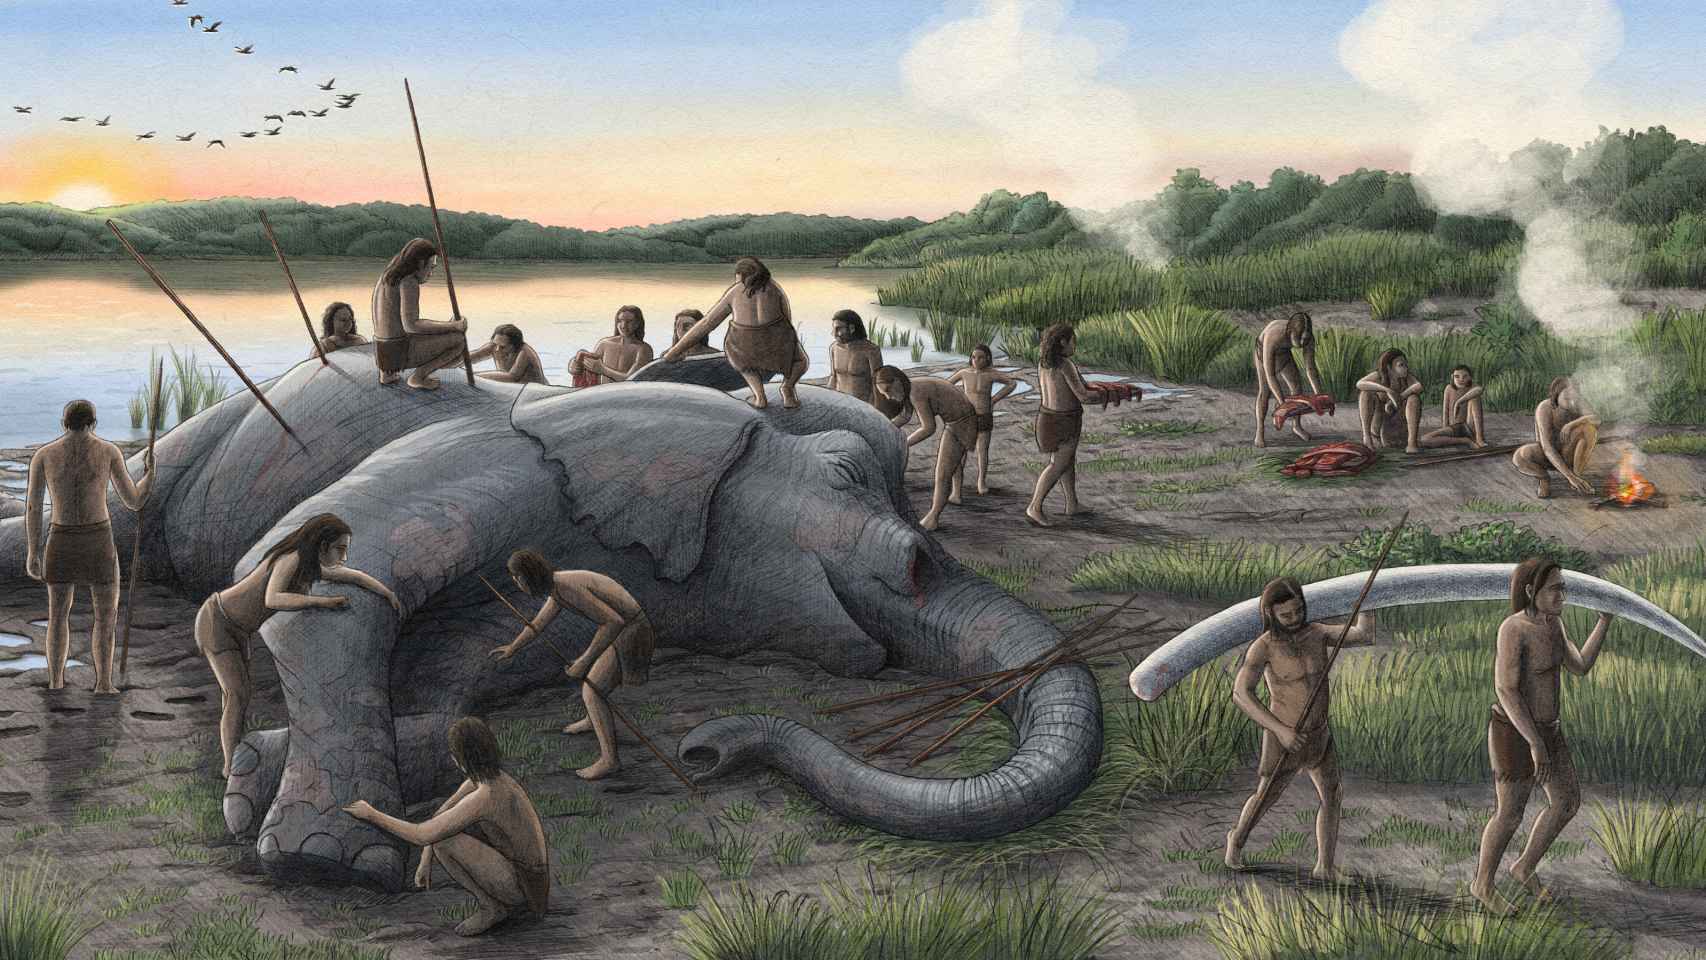 Reconstrucción artística de un grupo de neandertales descuartizando un elefante prehistórico (Palaeoloxodon antiquus).